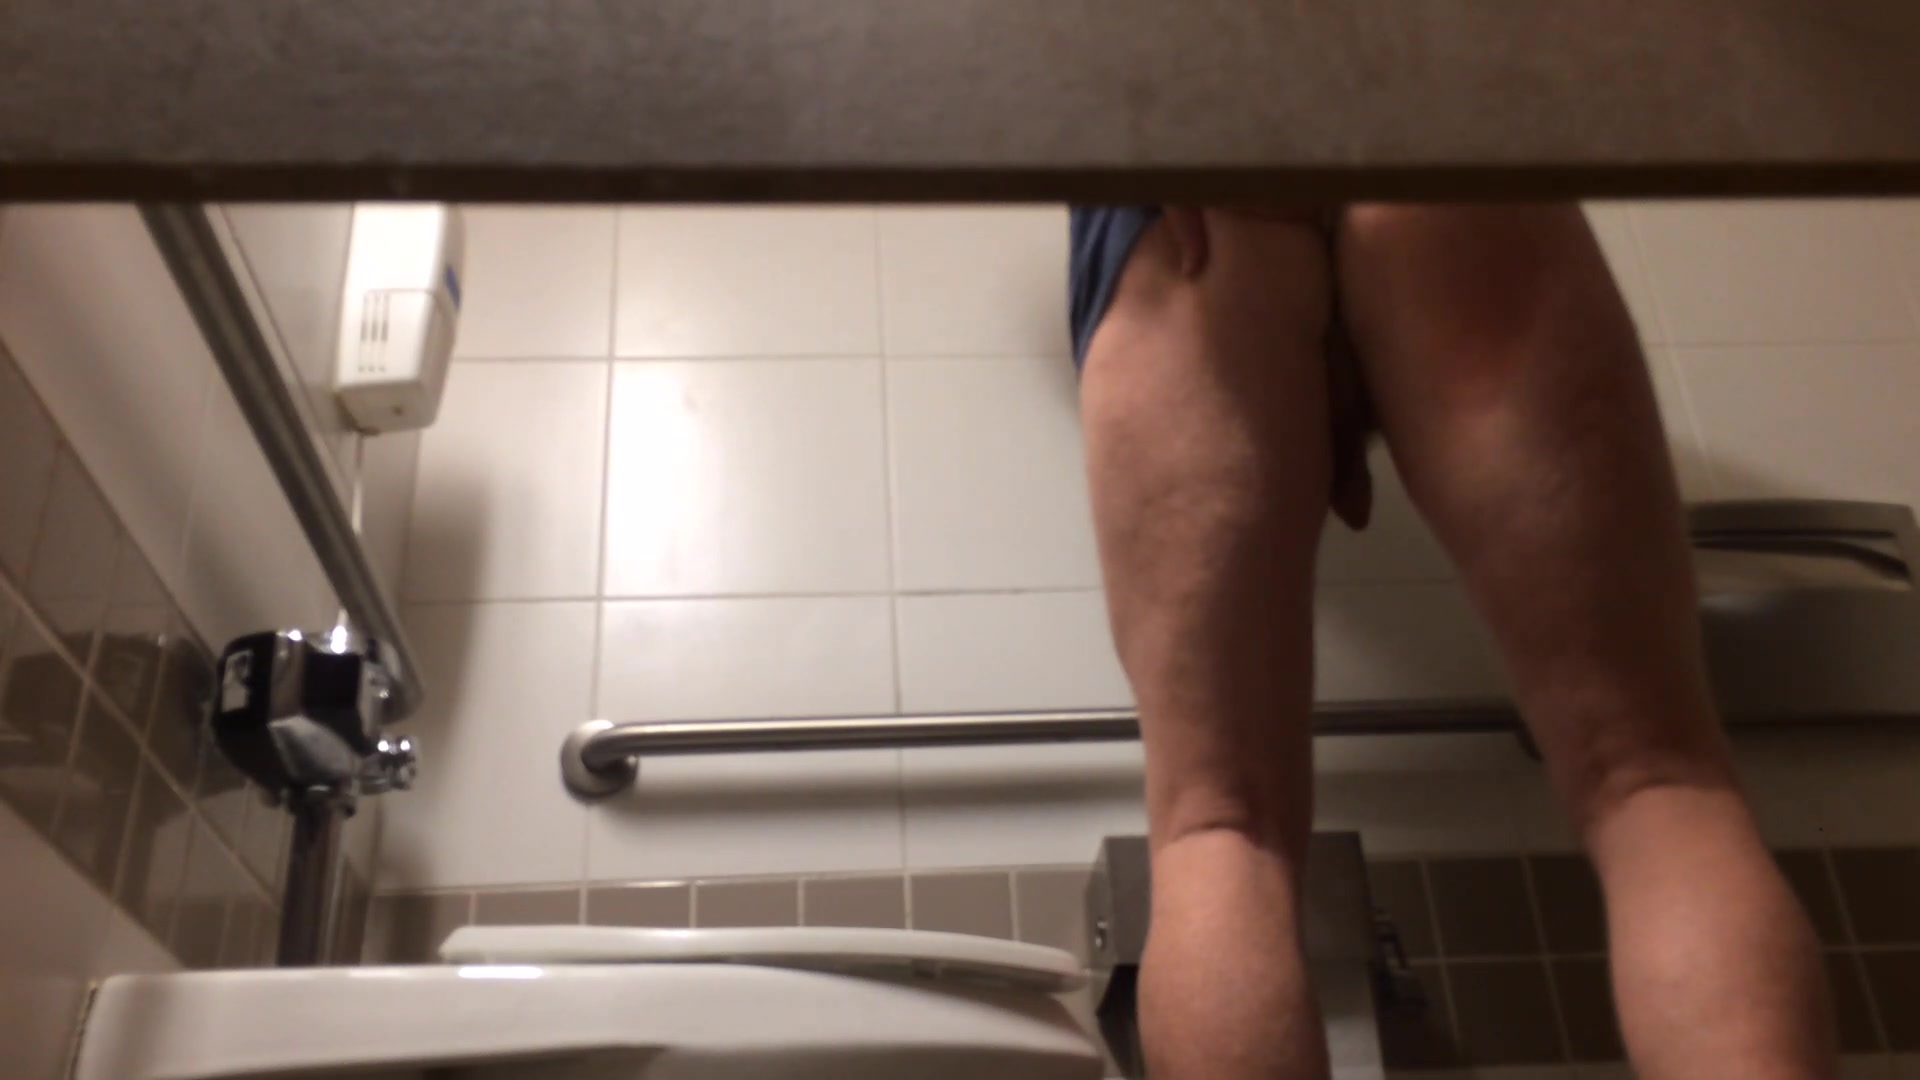 straight white man on toilet